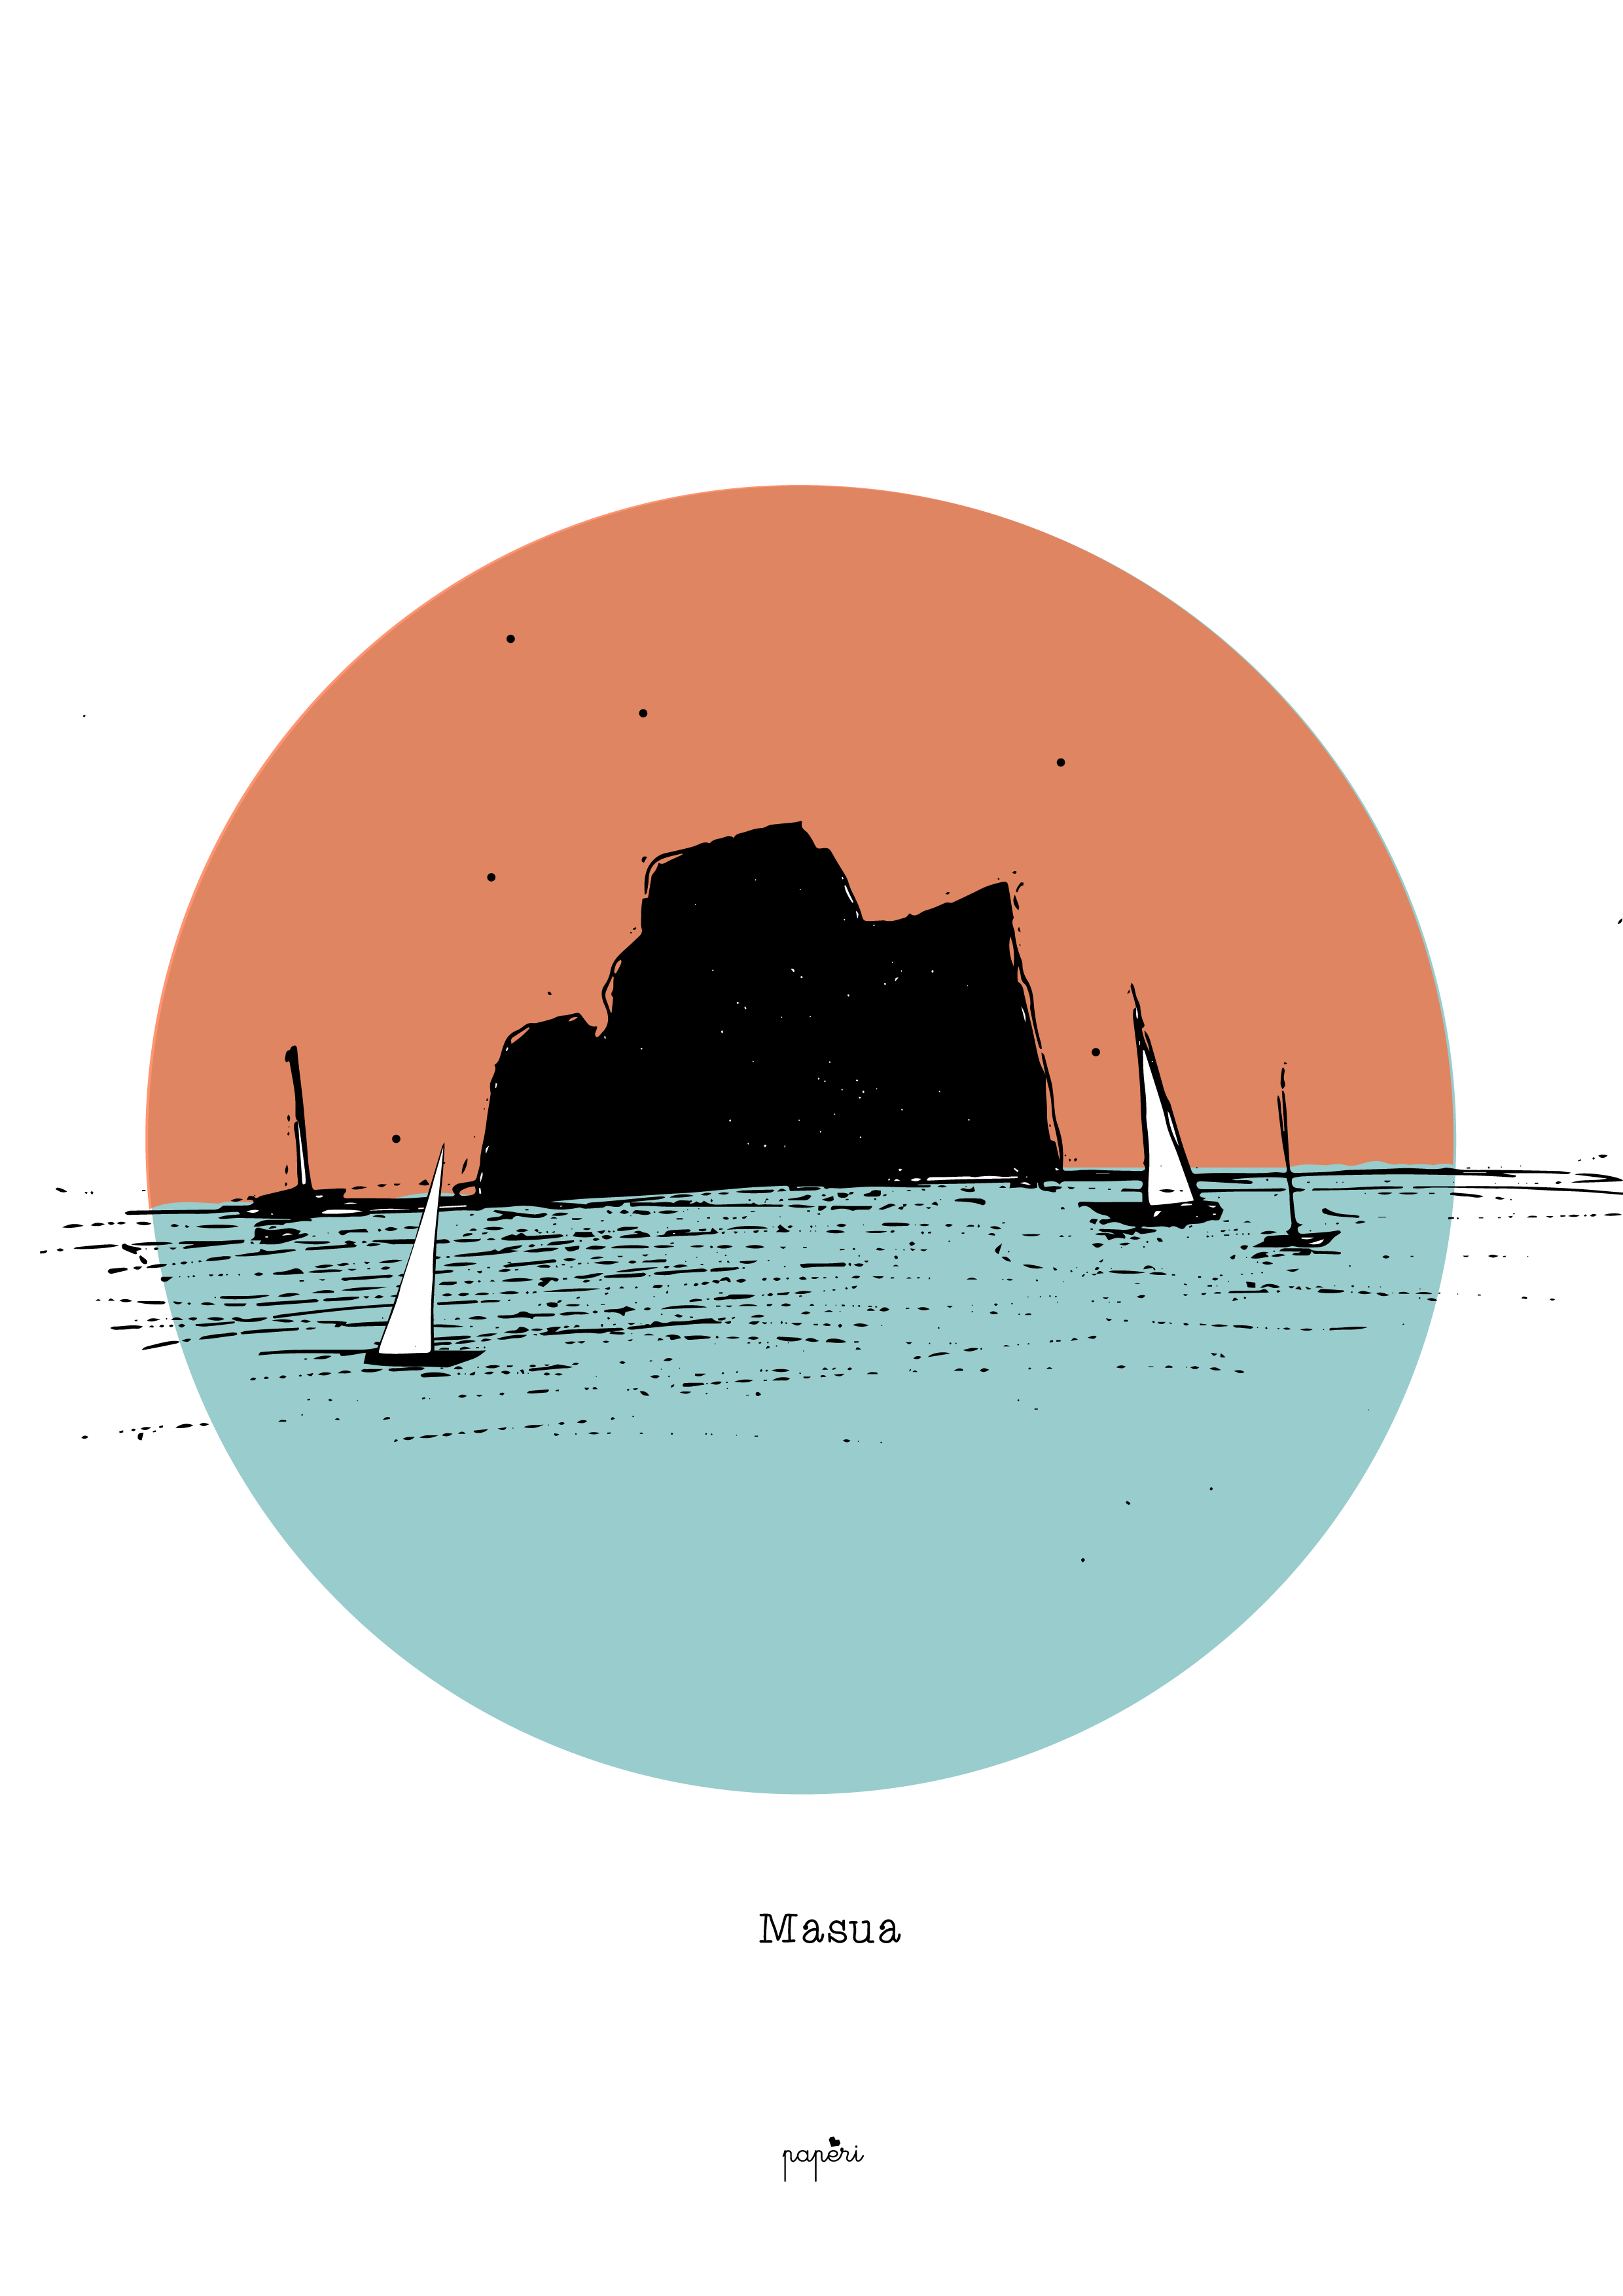 Series - 'Places of the Sea'-Masua